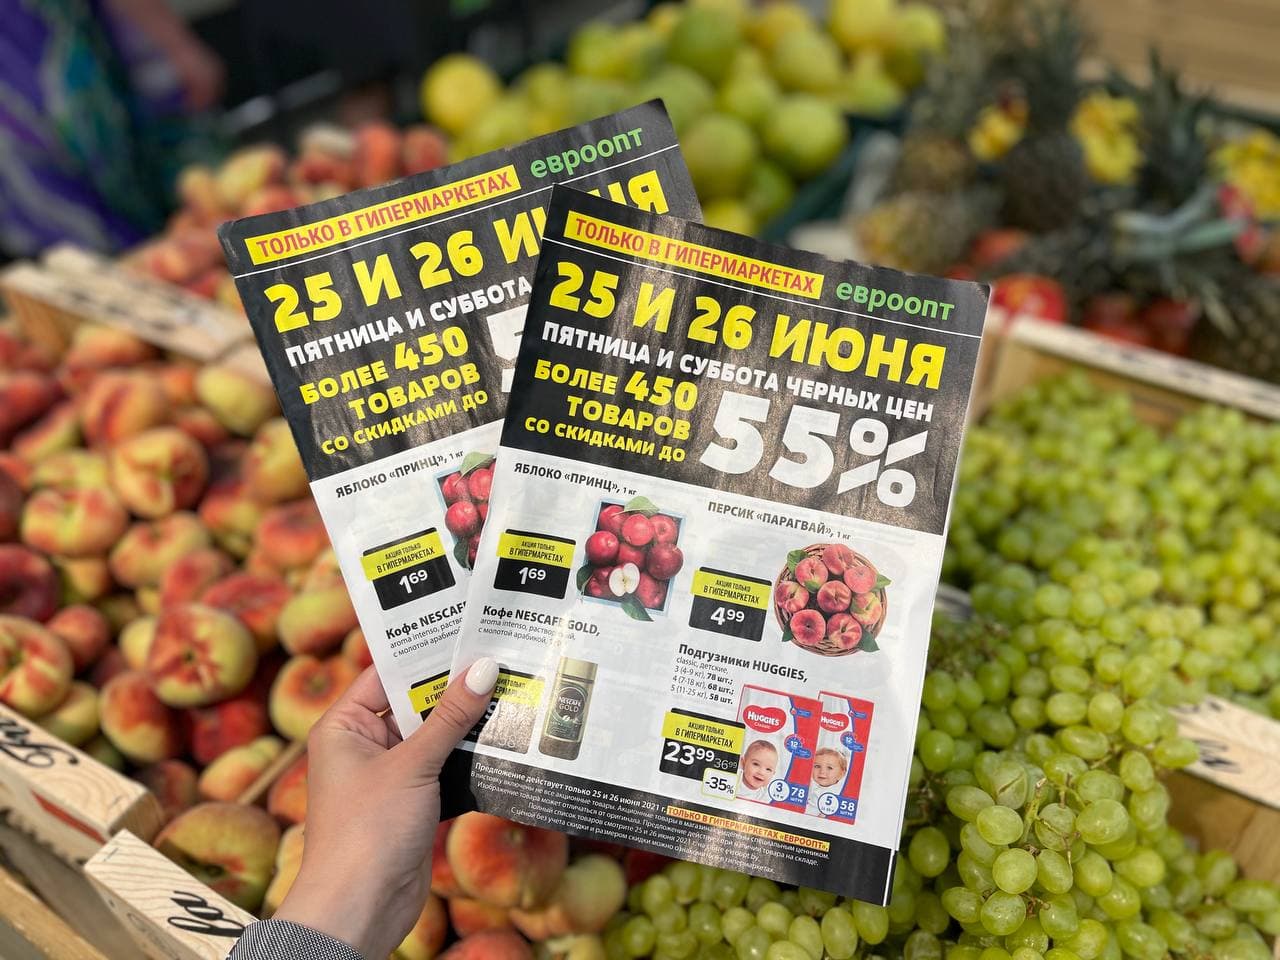 Бобруйск накрыла «черная пятница». Цены на продукты рухнули до 55%!